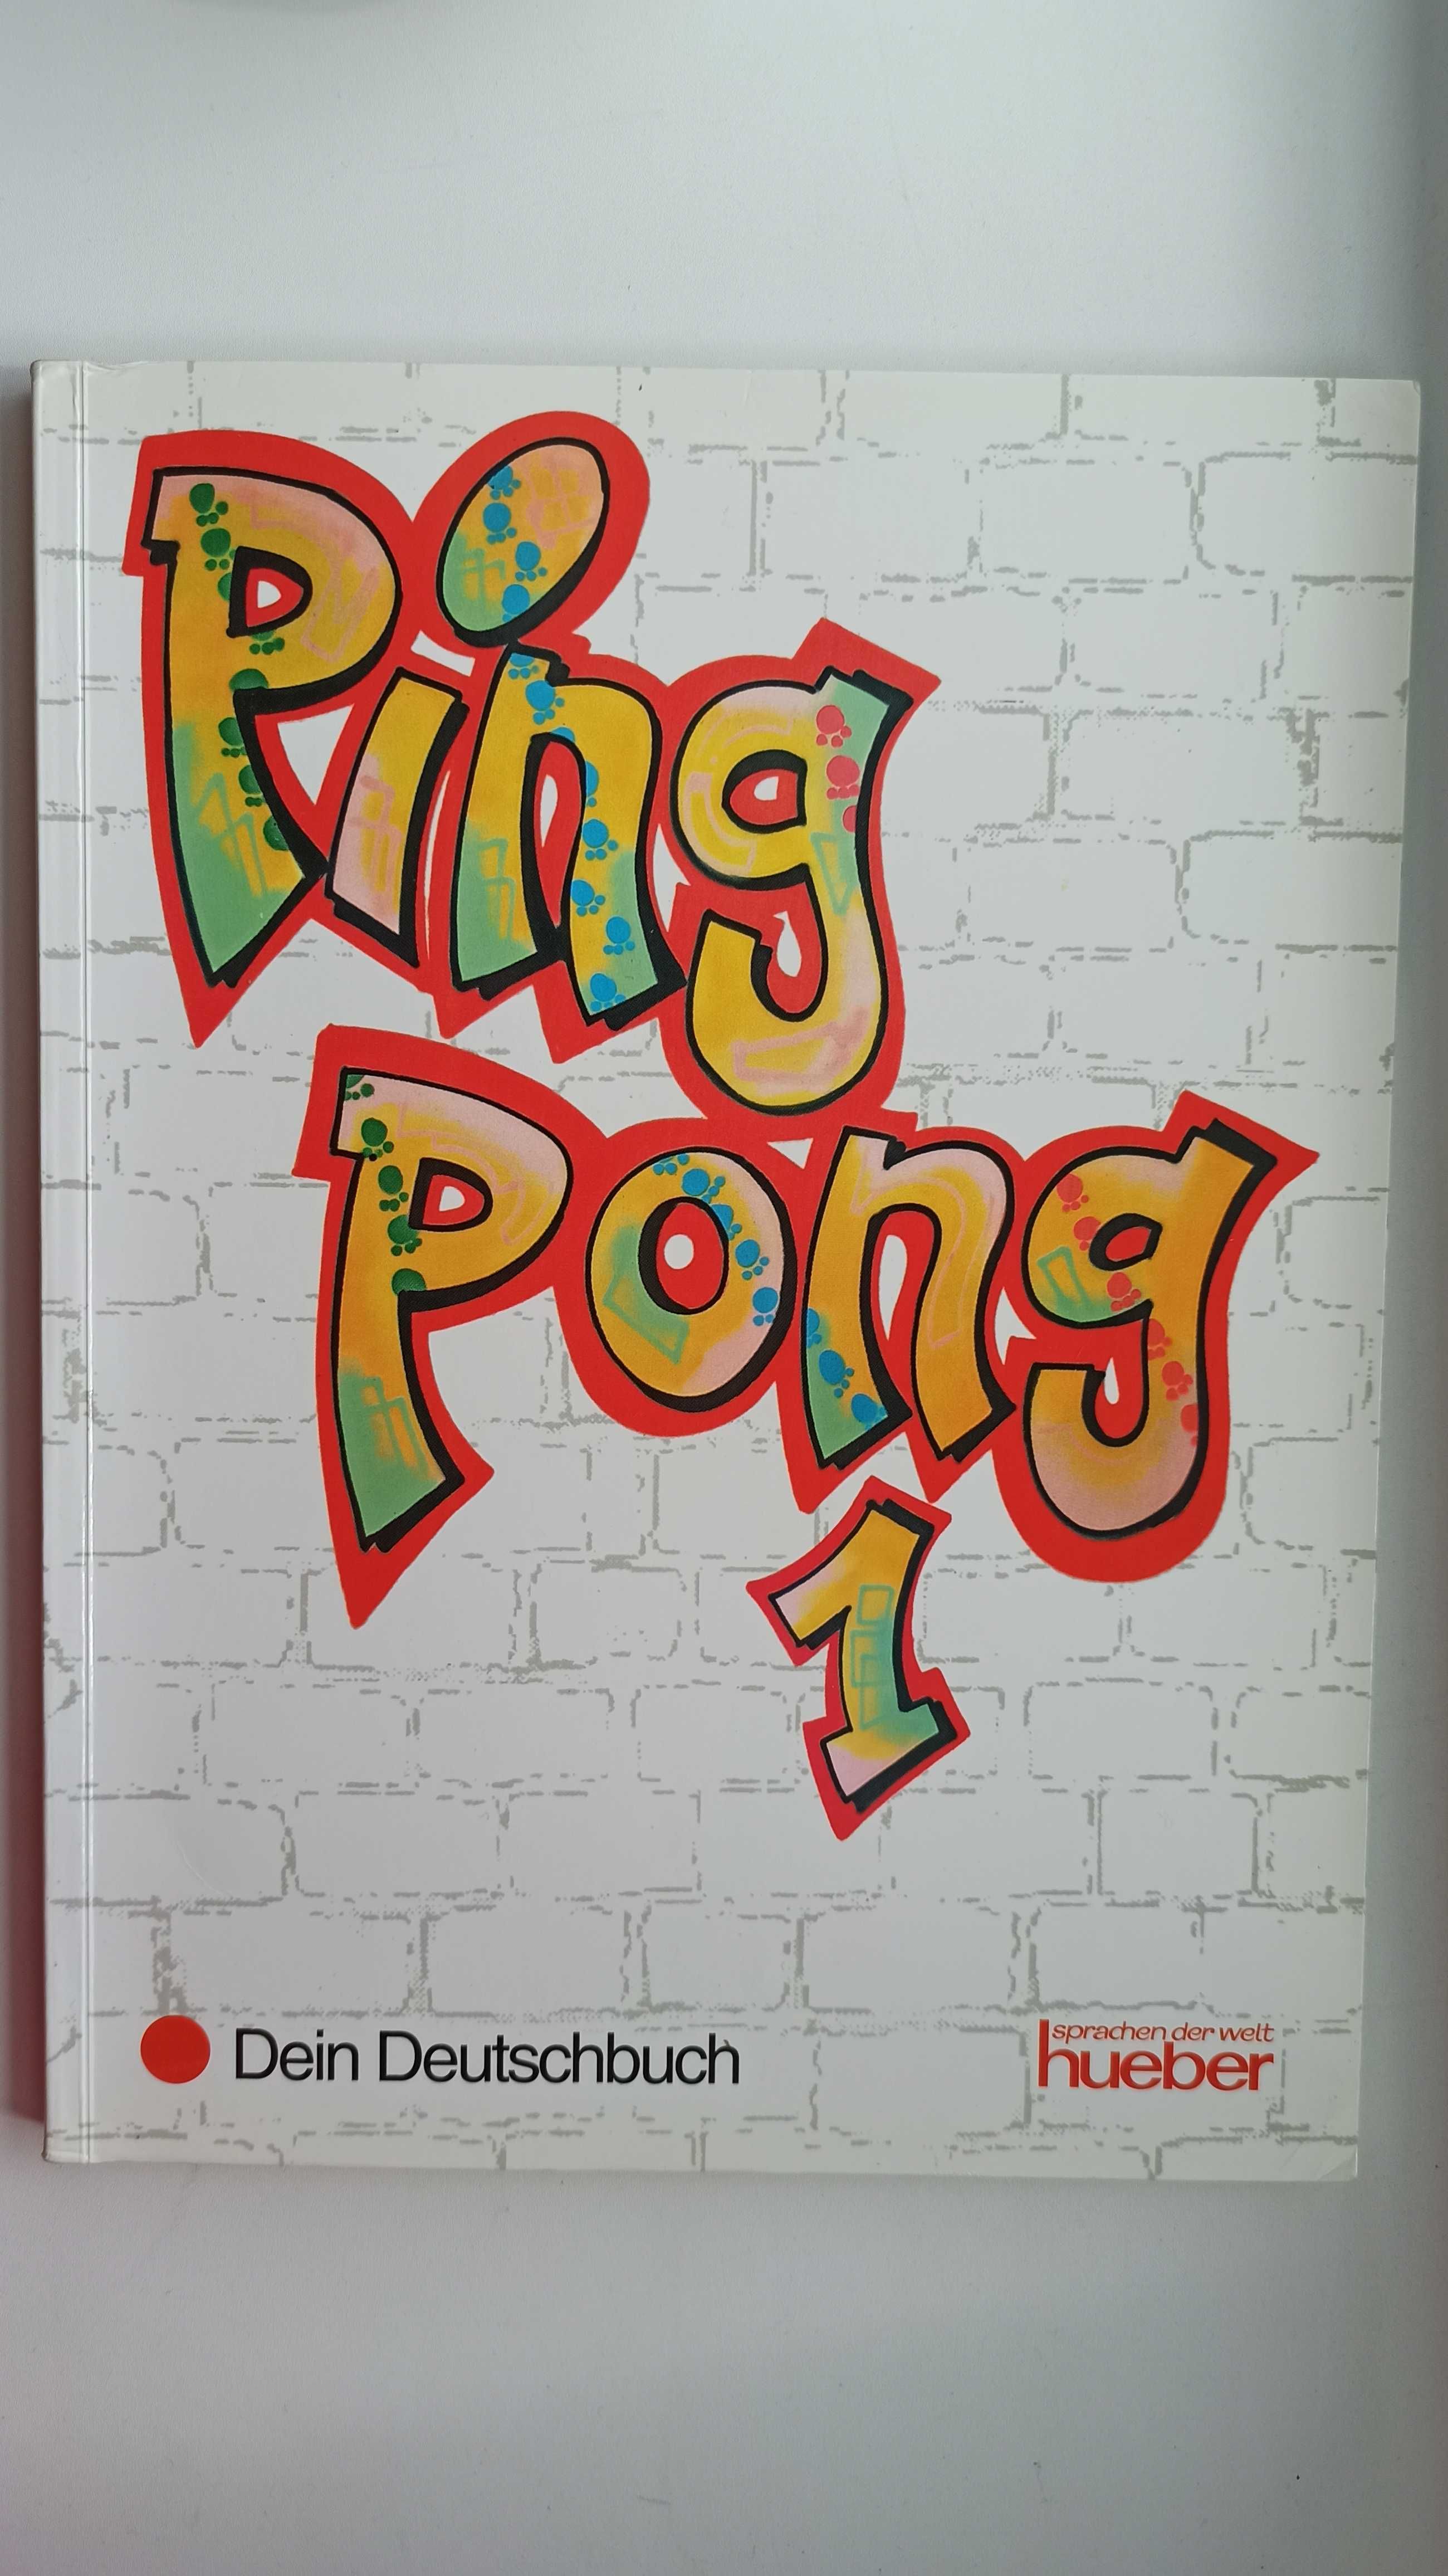 Підручник з німецької мови для початківців Ping Pong 1